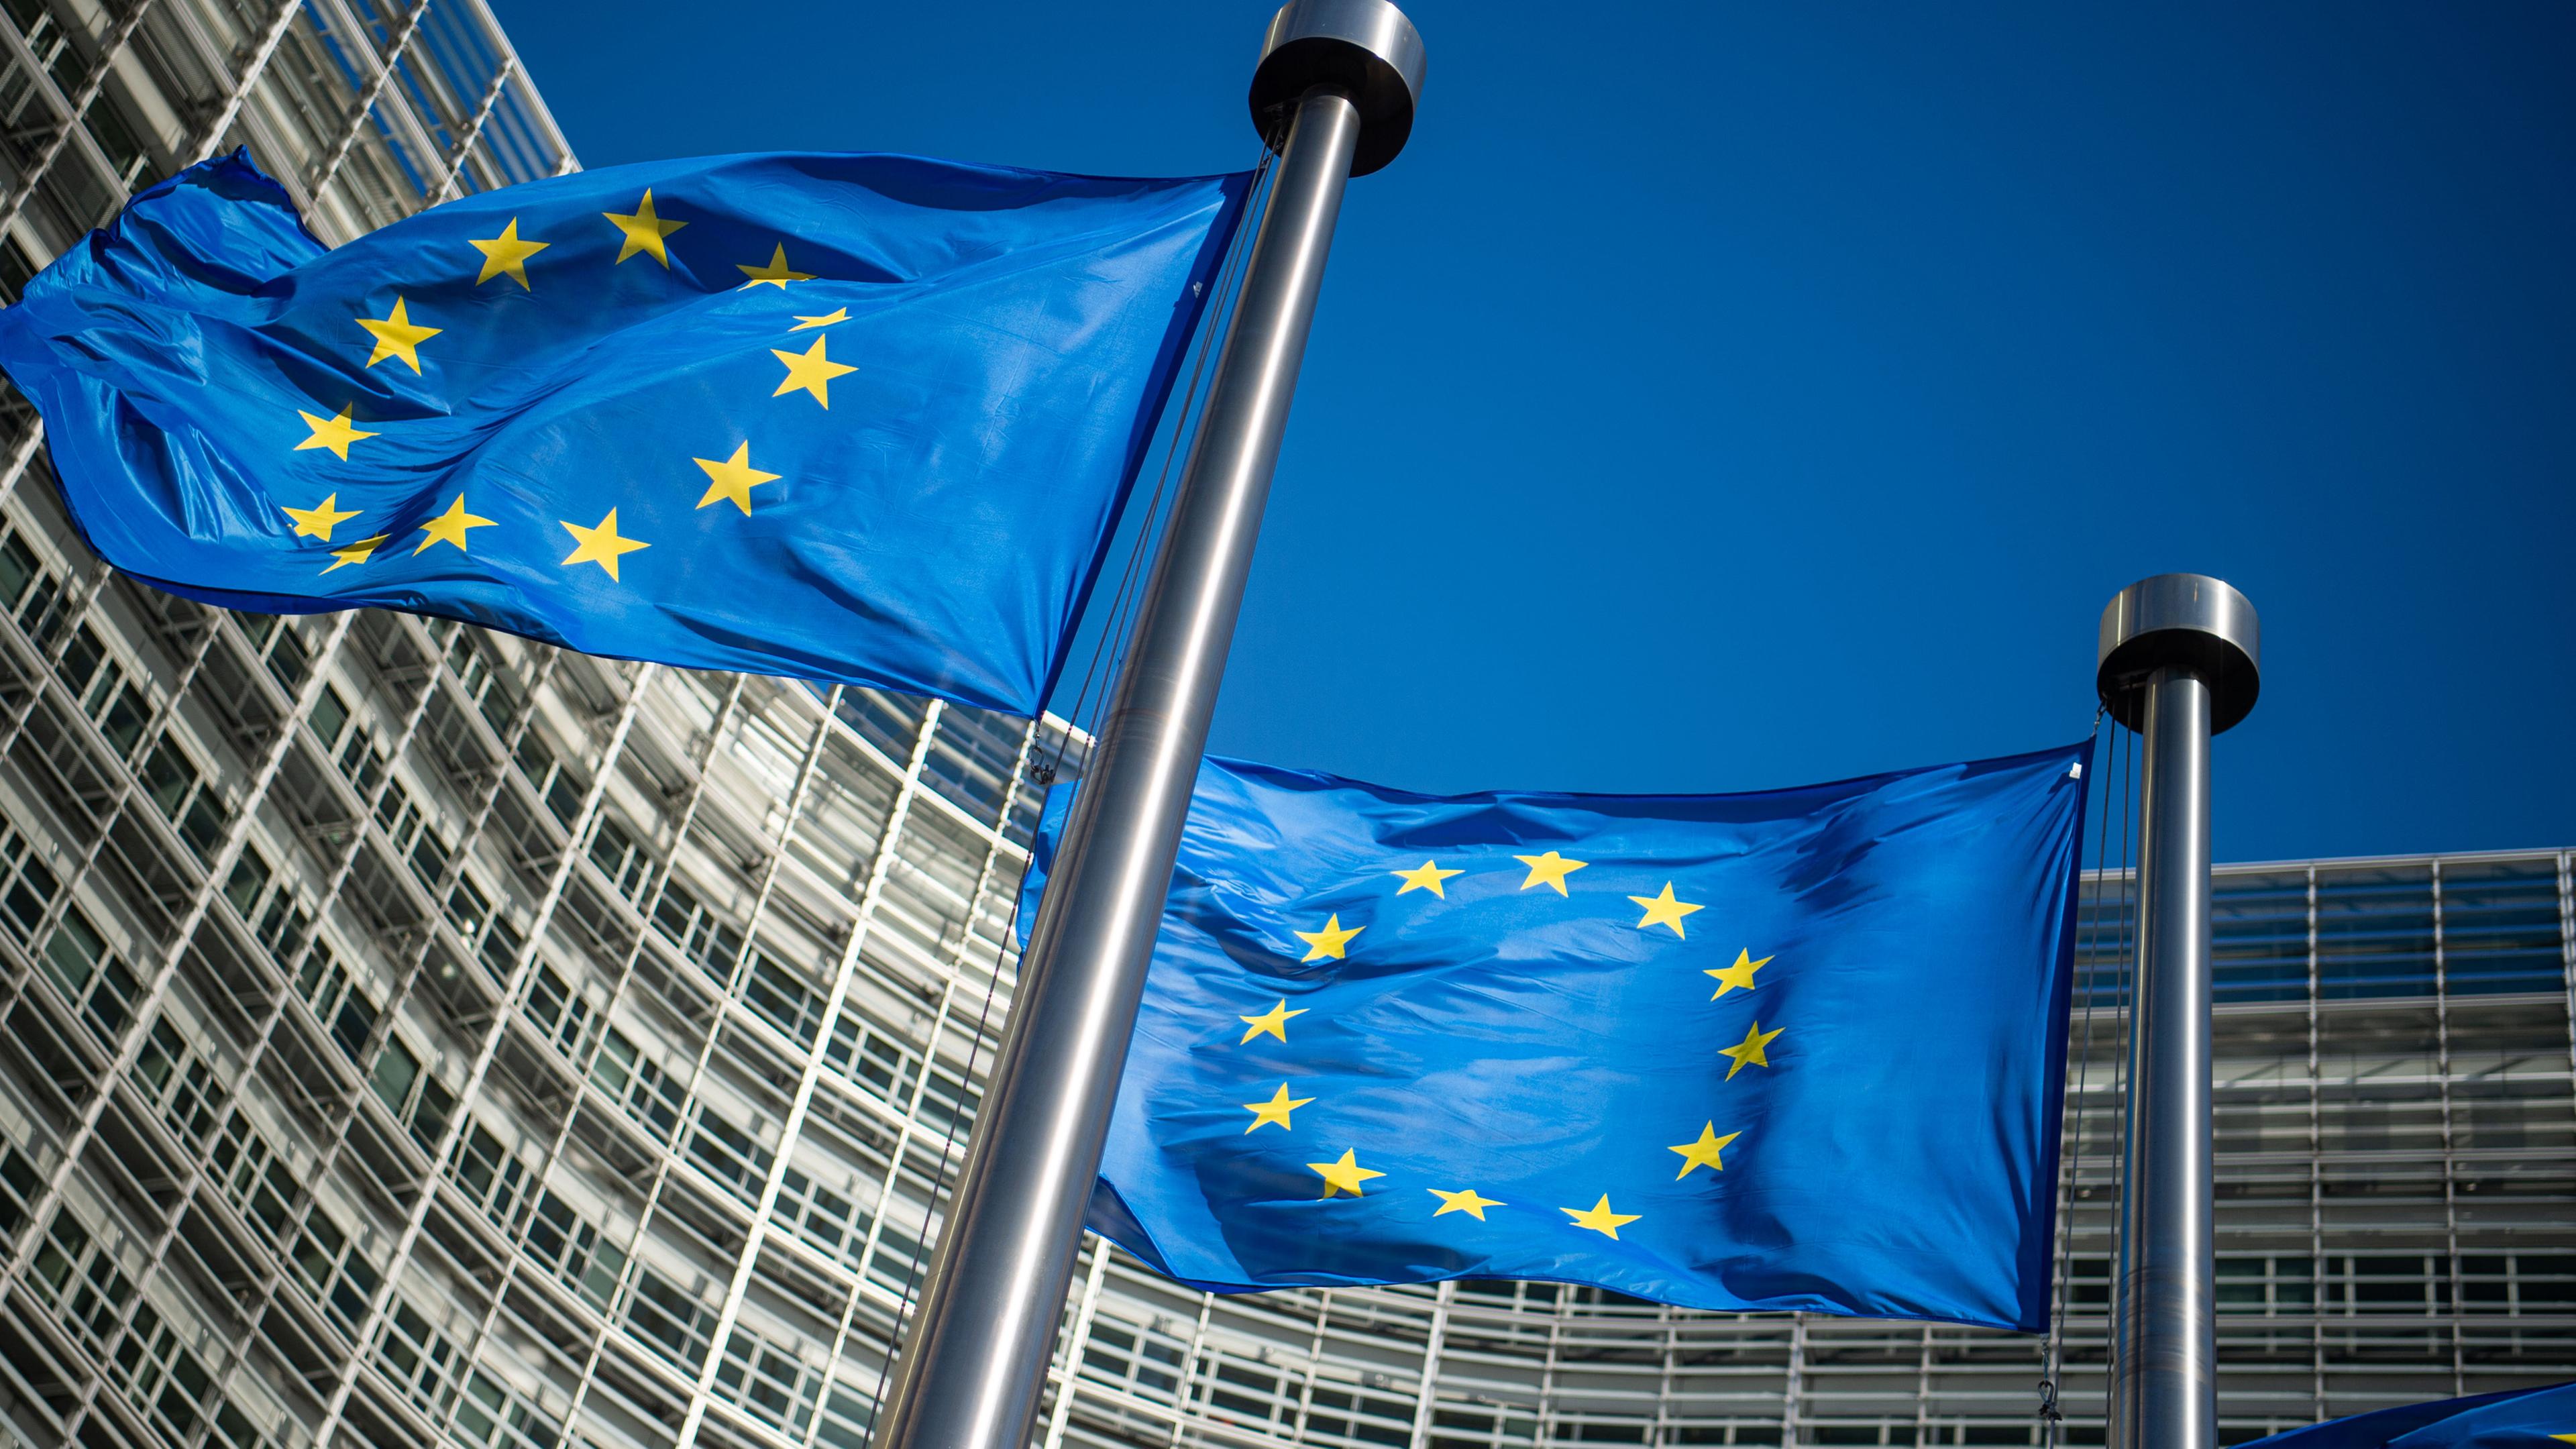 Flaggen der Europäischen Union wehen im Wind vor dem Berlaymont-Gebäude, dem Sitz der Europäischen Kommission